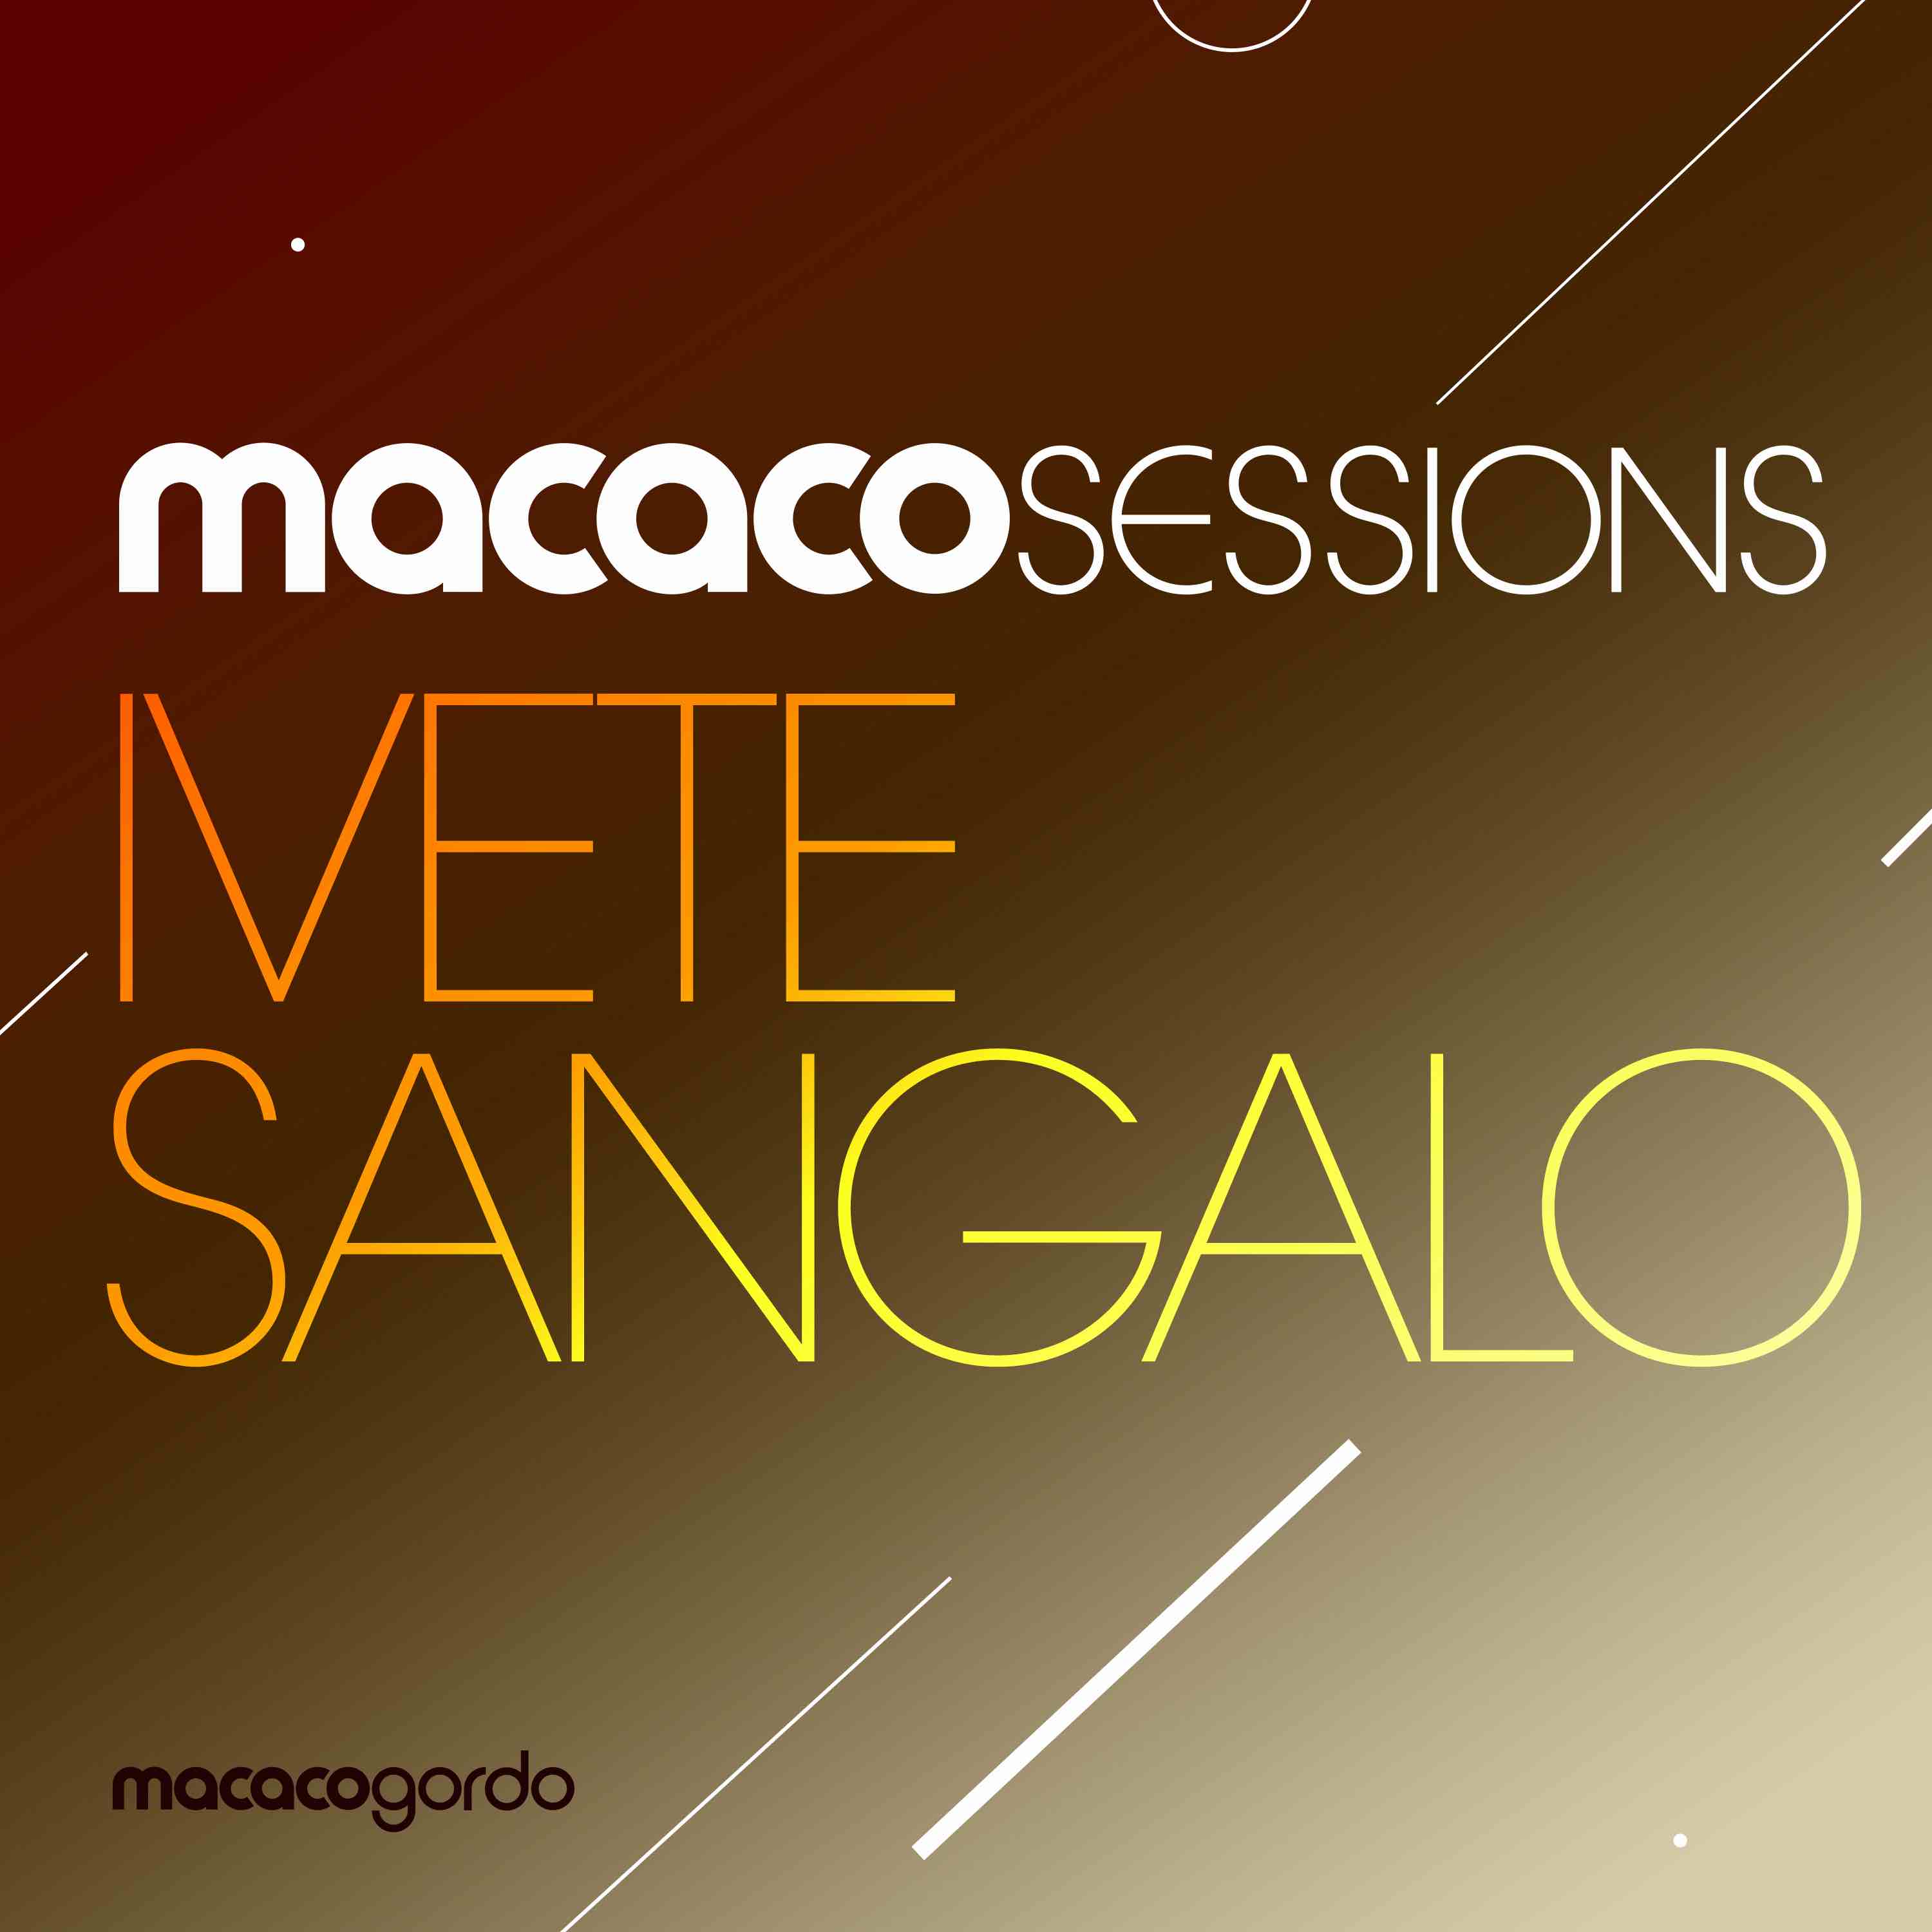 Macaco Sessions estreia nova temporada com Ivete Sangalo